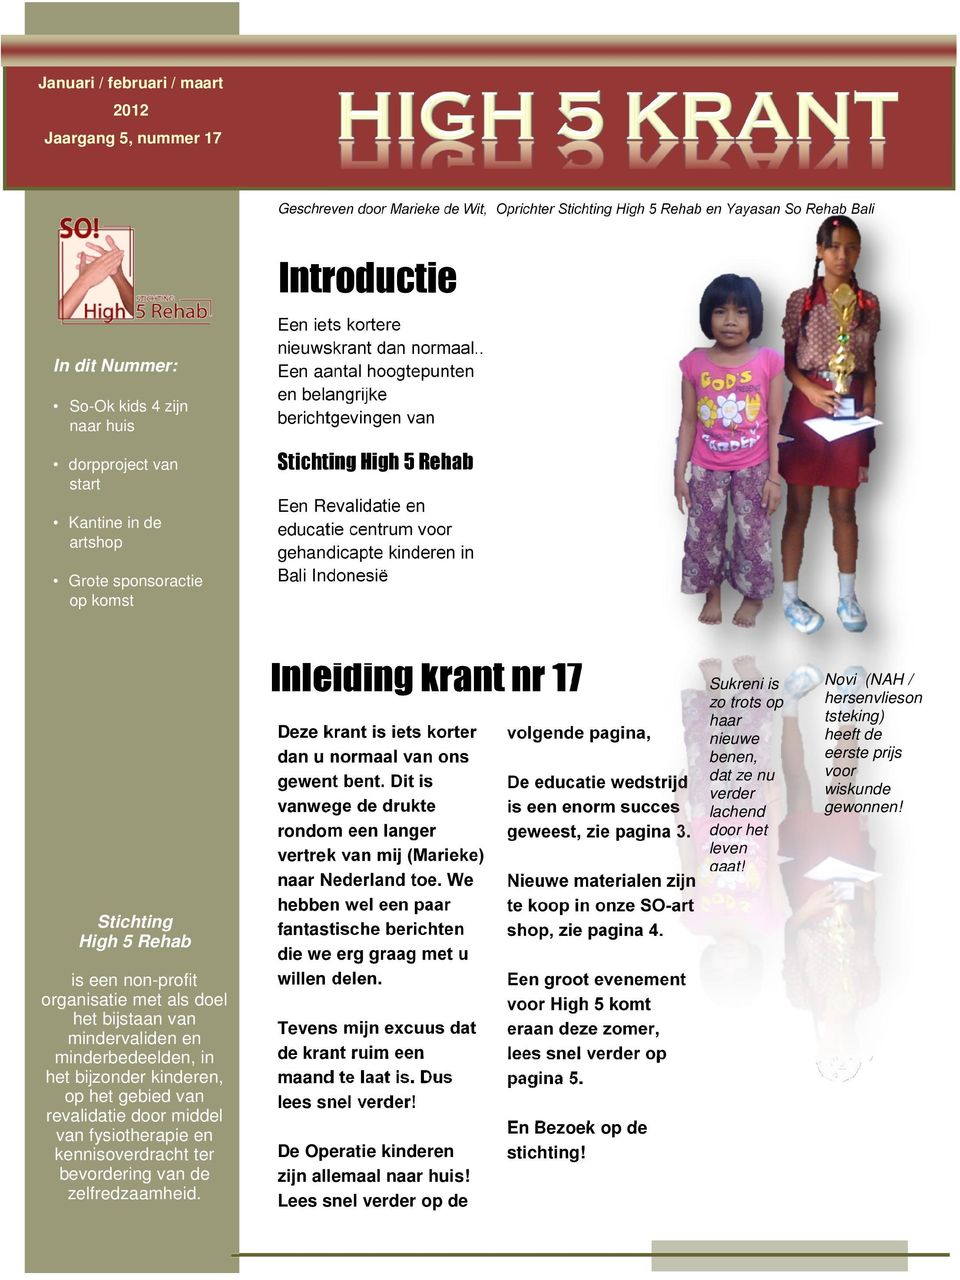 . Een aantal hoogtepunten en belangrijke berichtgevingen van Stichting High 5 Rehab Een Revalidatie en educatie centrum voor gehandicapte kinderen in Bali Indonesië Inleiding krant nr 17 Stichting